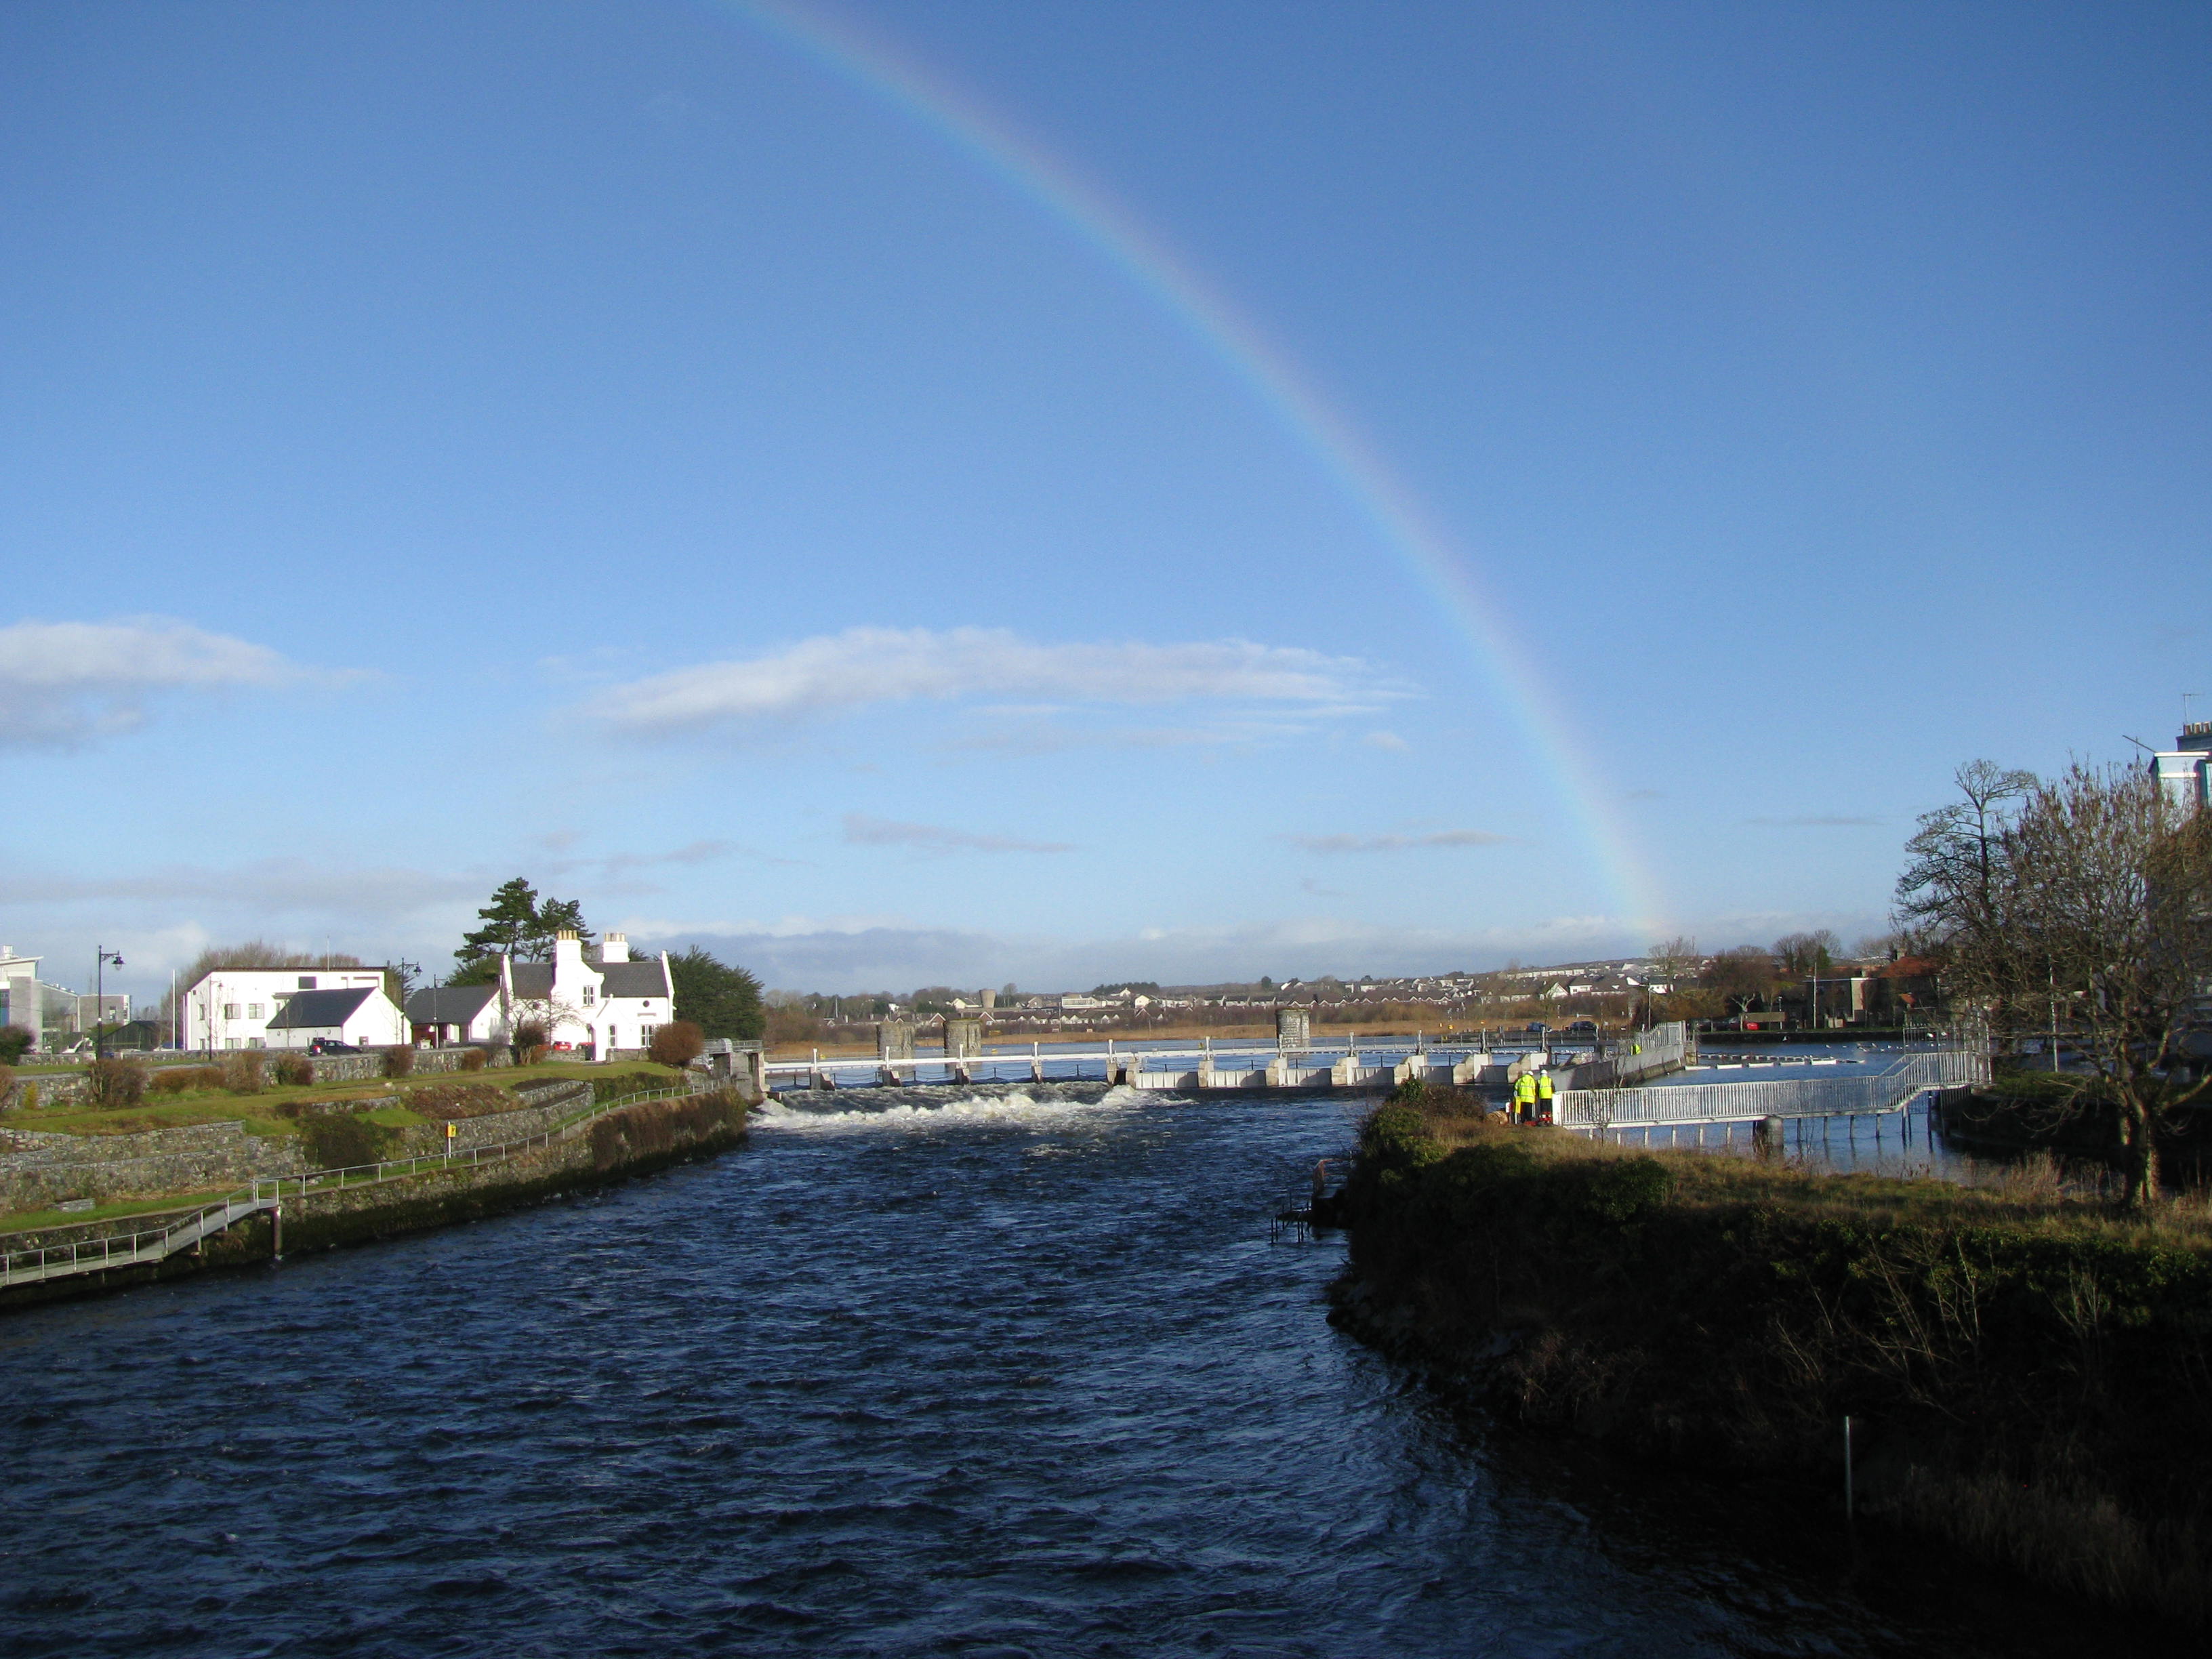 1st rainbow in Ireland